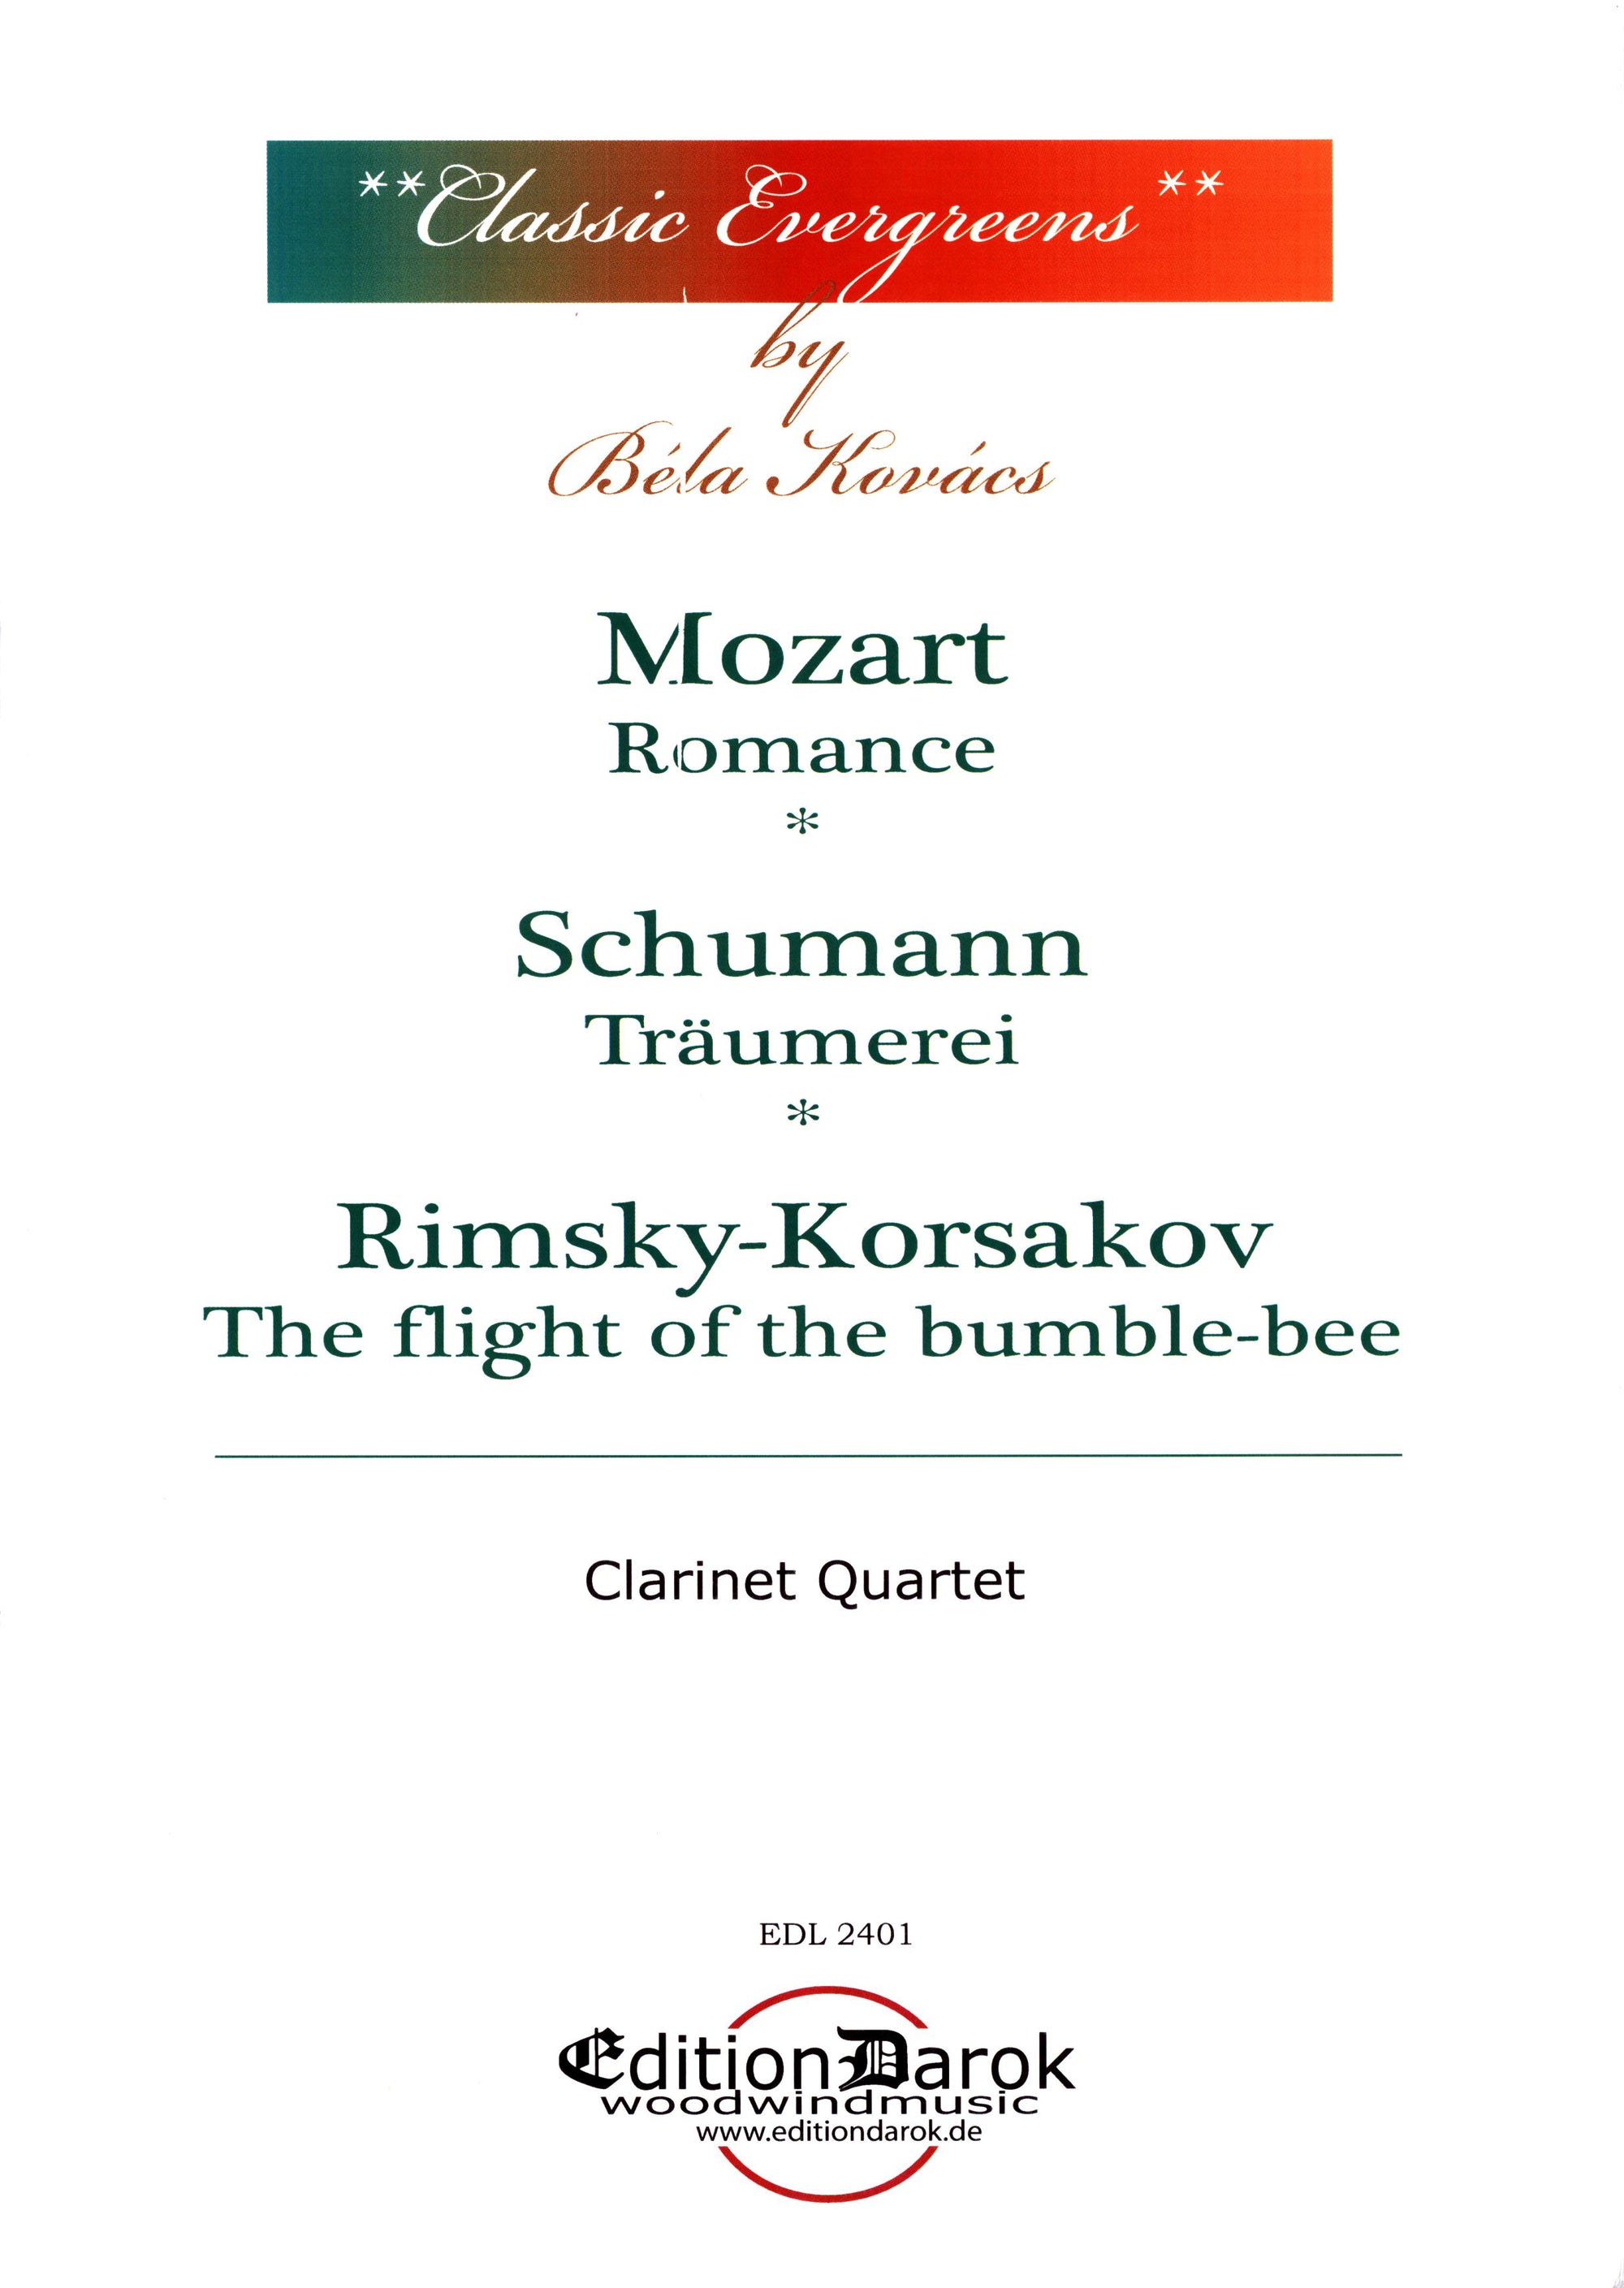 Kovács: Classic Evergreens for Clarinet Quartet